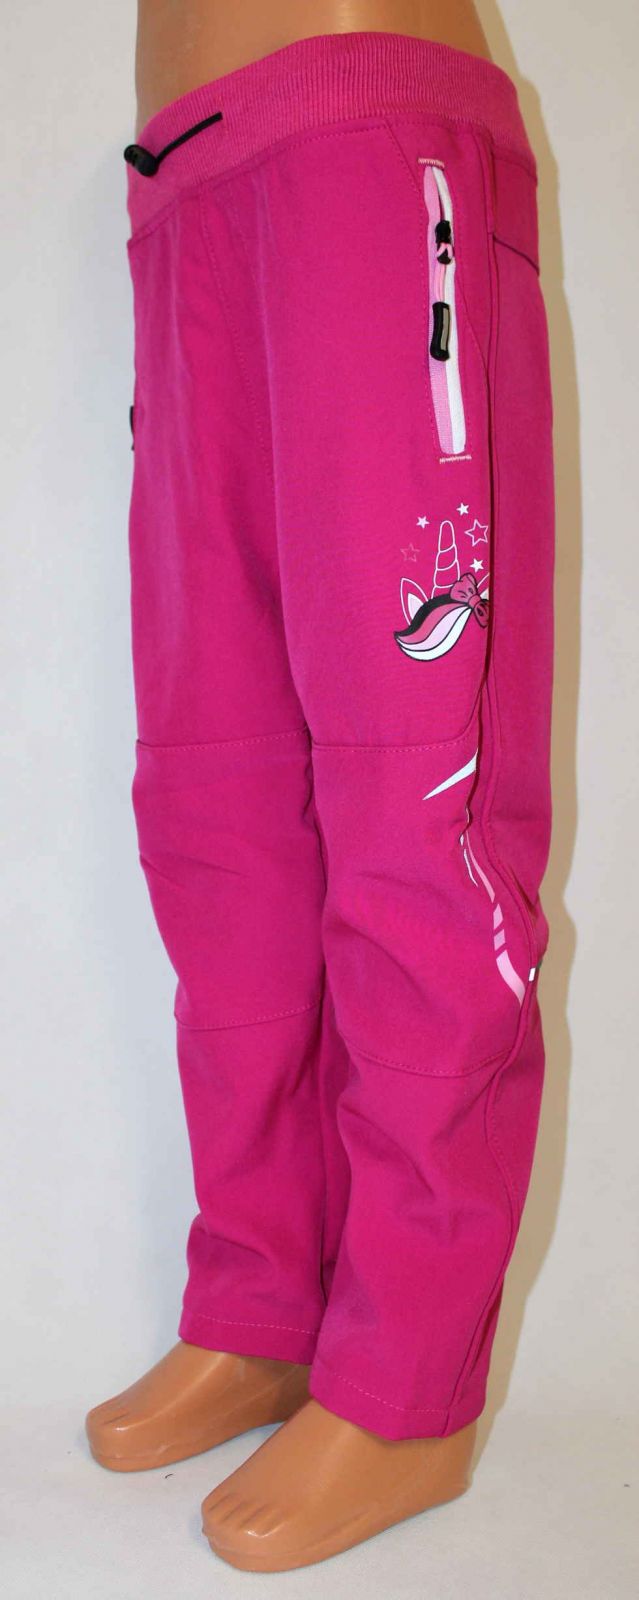 Dětské softshellové kalhoty KUGO, zateplené kalhoty, zimní kalhoty, podzimní kalhoty, dívčí softshellové kalhoty, dětské zateplené kalhoty, softshellové kalhoty, růžové teplé kalhoty